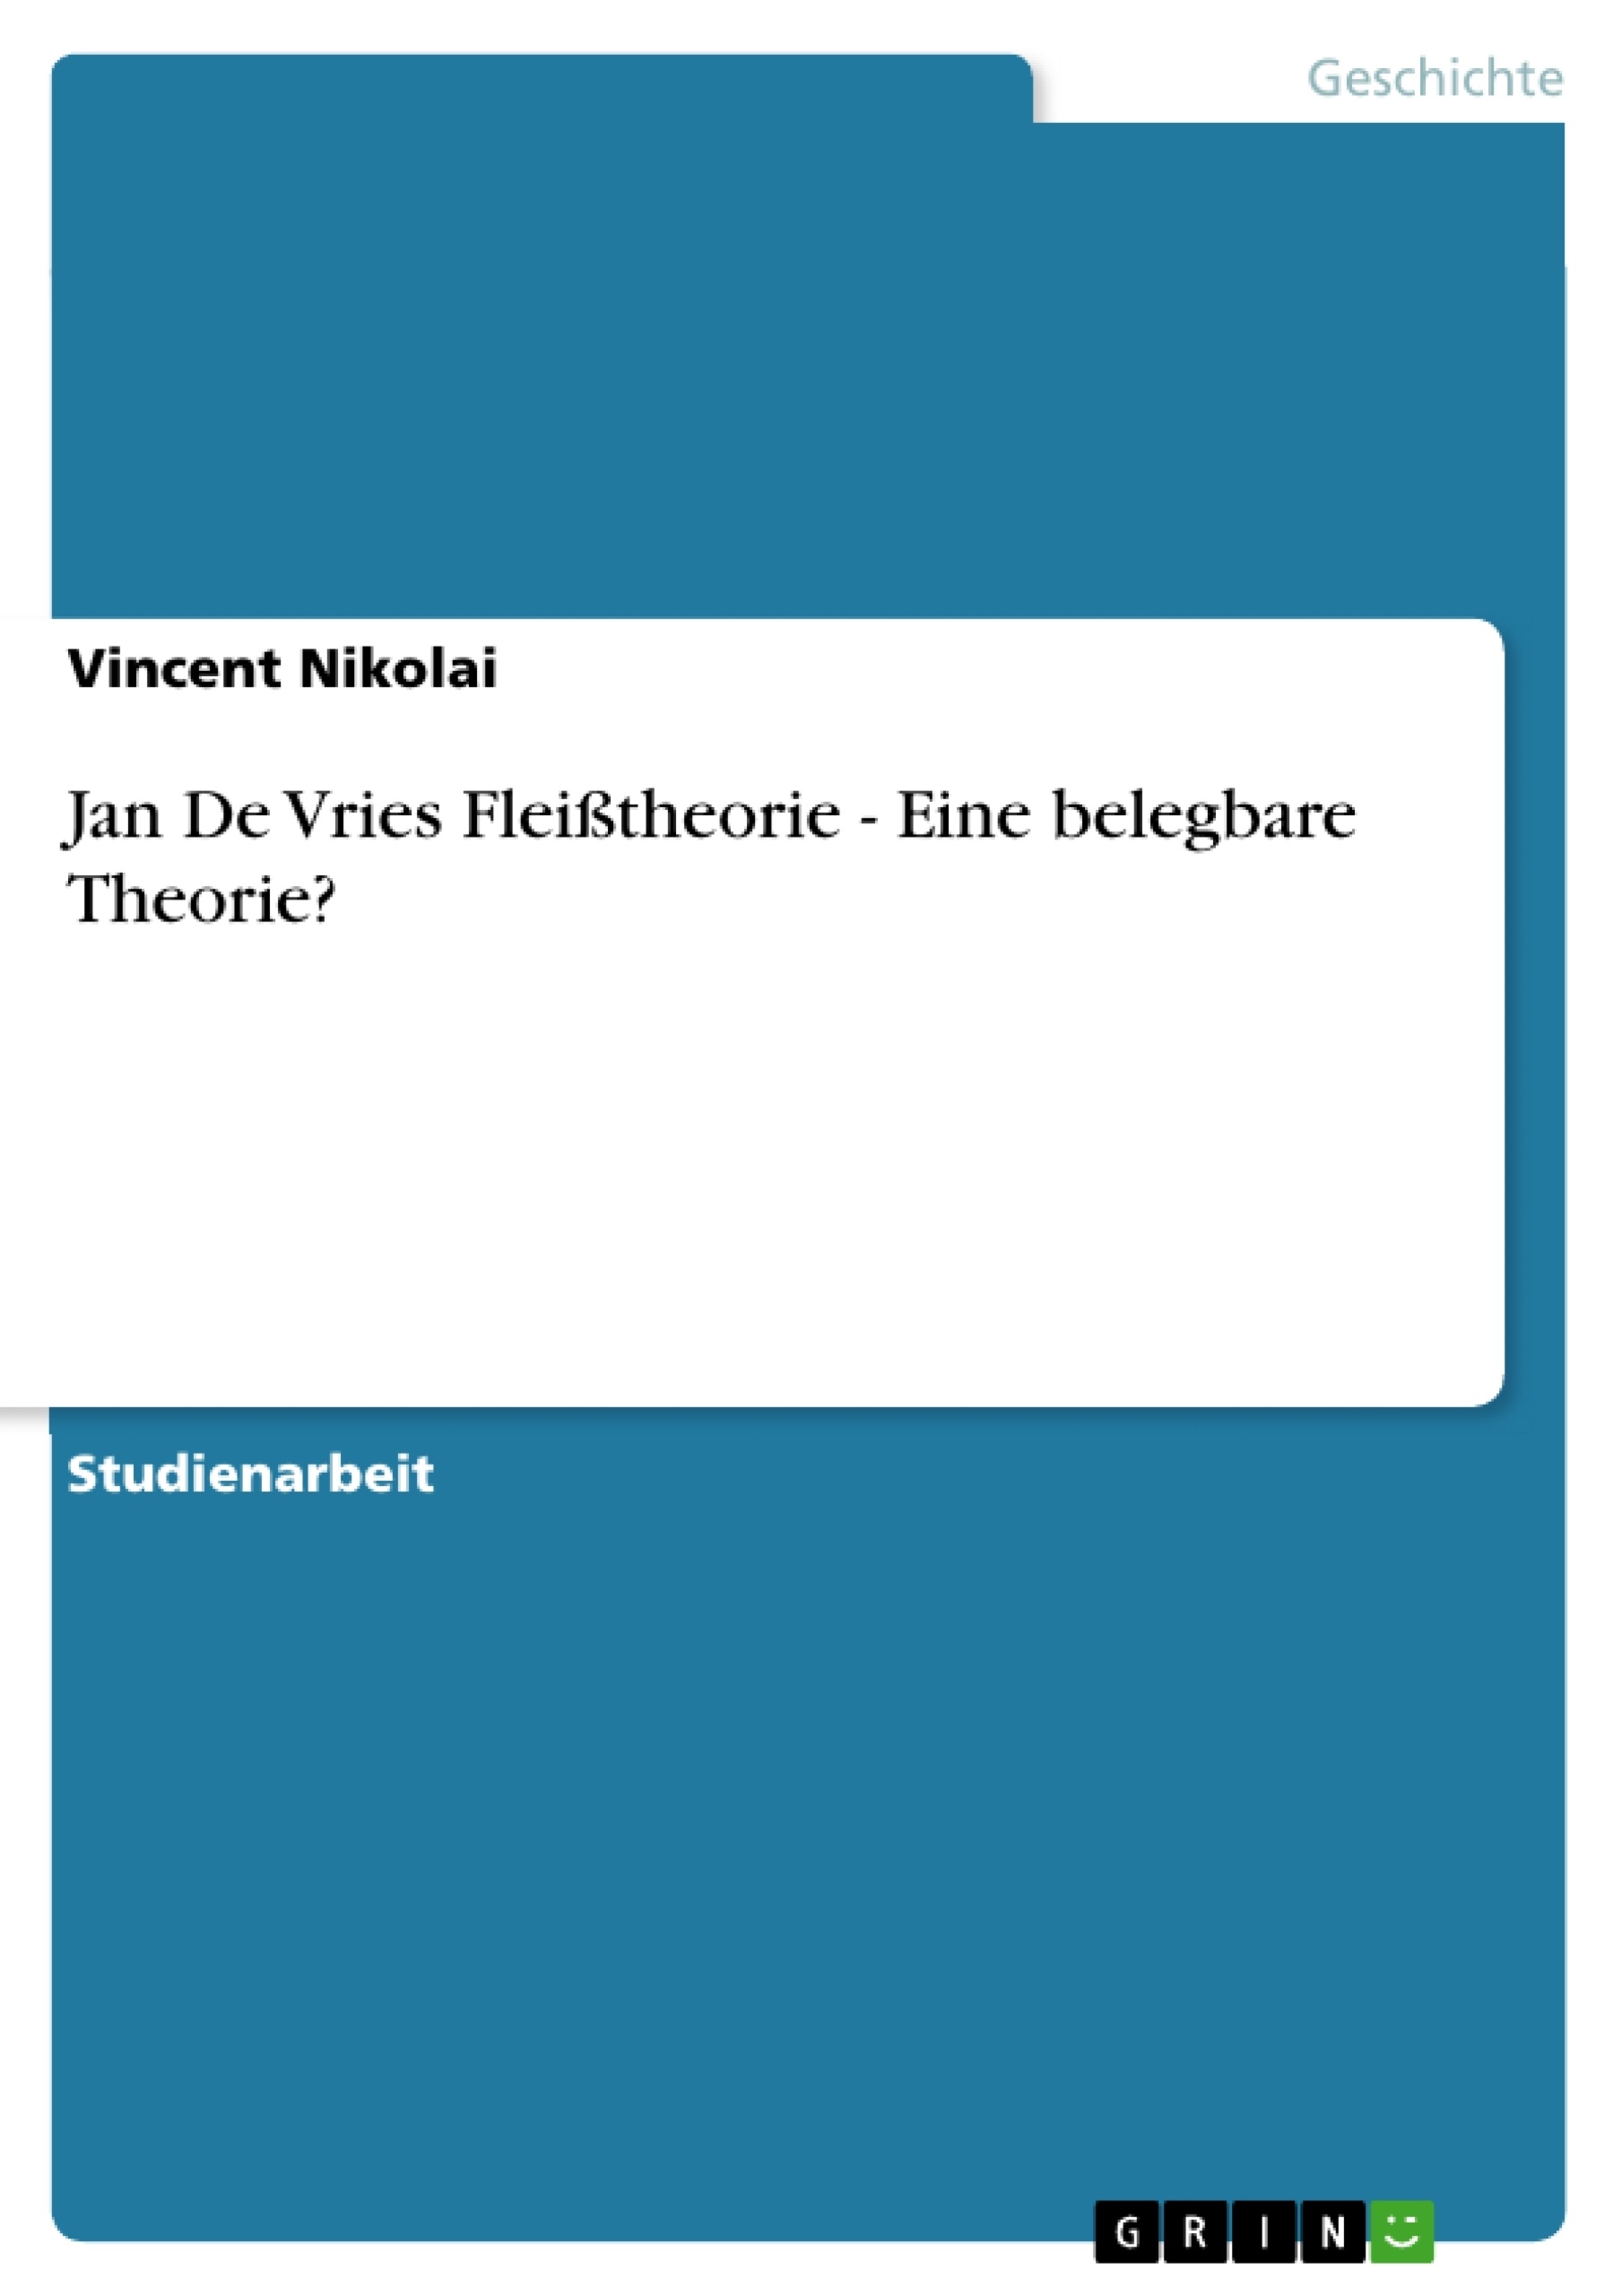 Title: Jan De Vries Fleißtheorie - Eine belegbare Theorie?